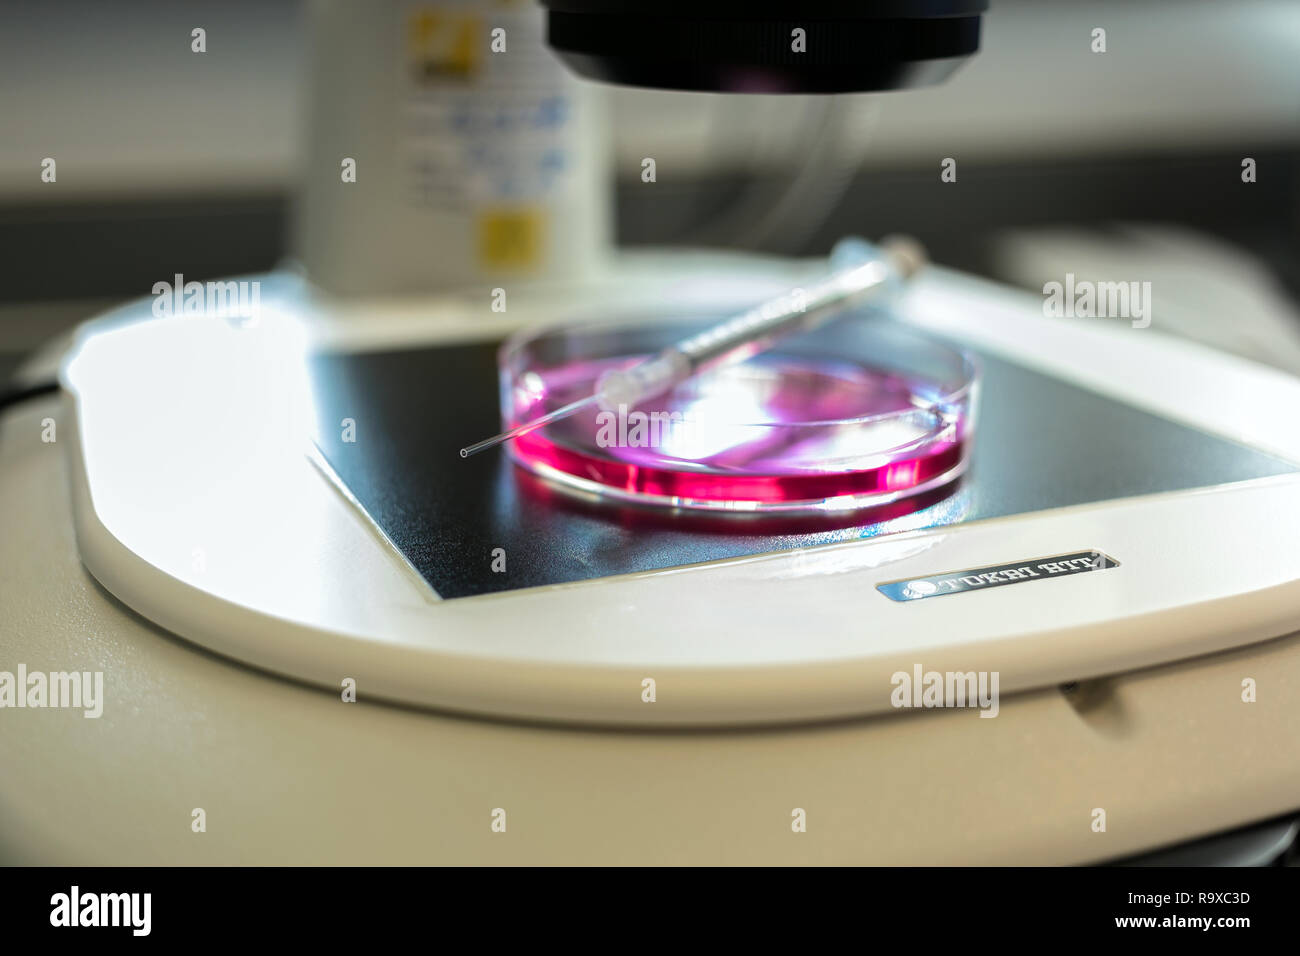 22.02.2018, Berlin, Deutschland - Kuenstliche Befruchtung nach der ICSI-Methode (Intrazytoplasmatische Spermien Injektion). Unter dem Mikroskop werden Stock Photo